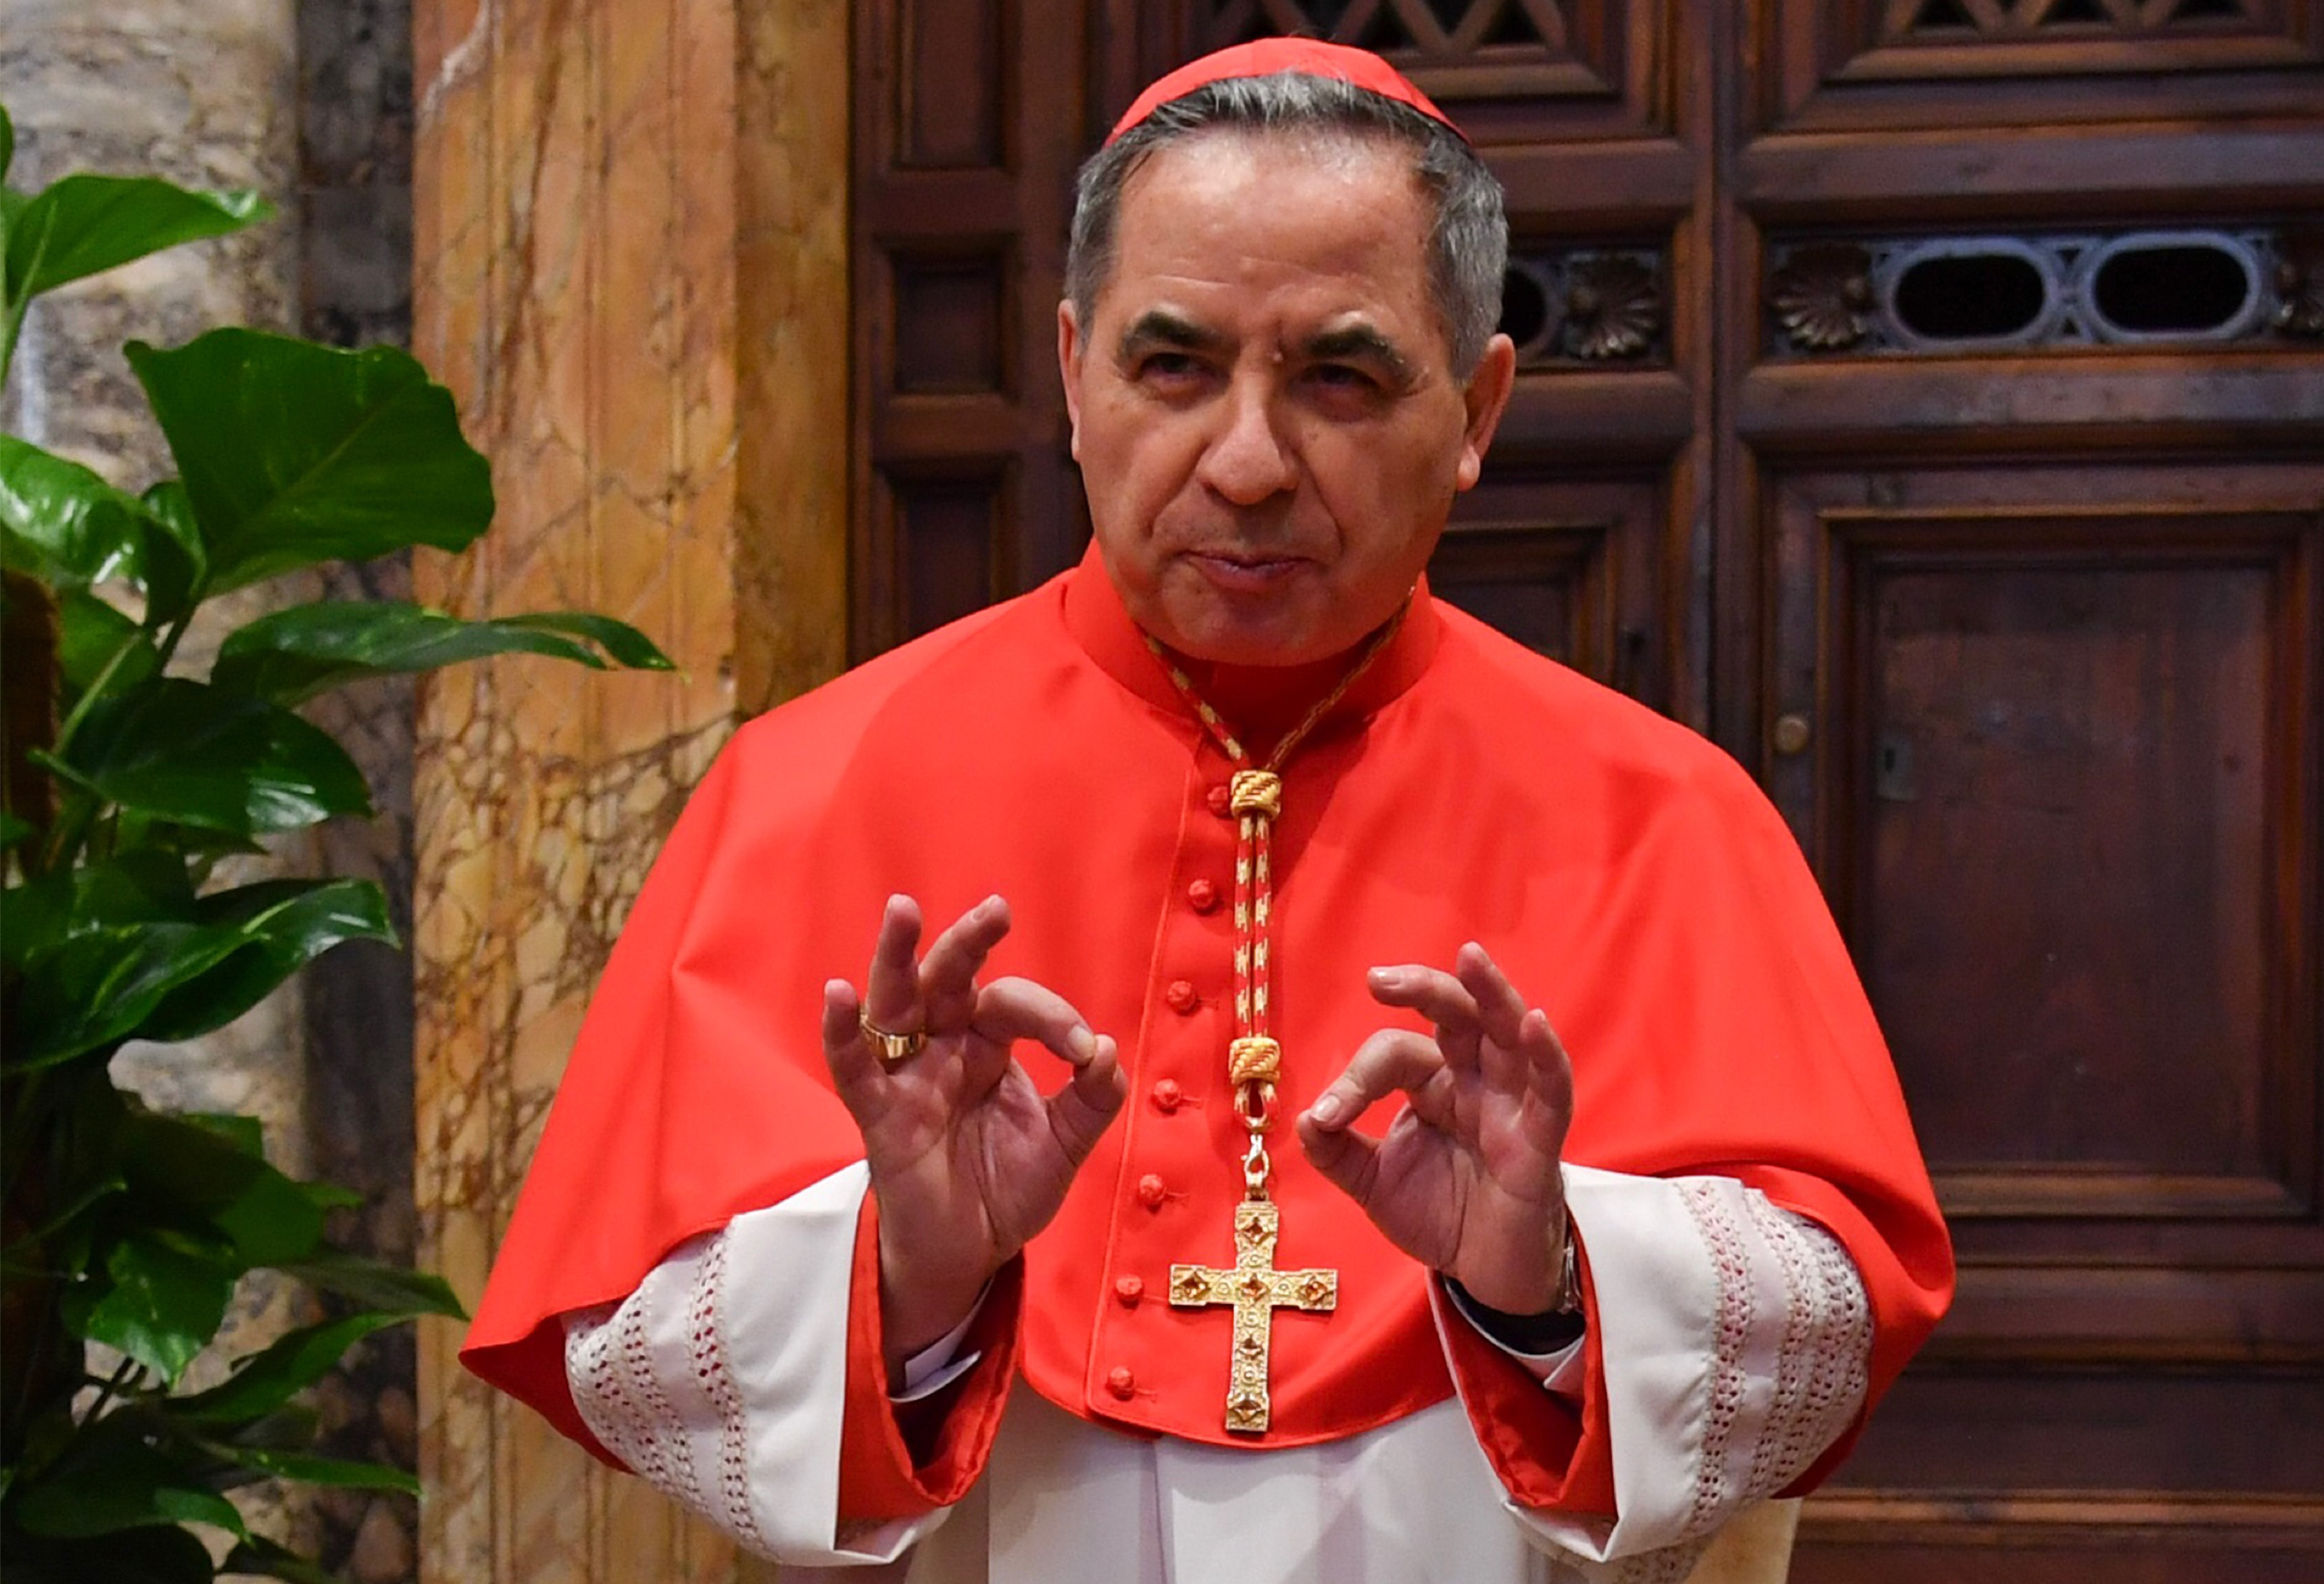 Lemondott egy befolyásos vatikáni bíboros, valószínűleg korrupció miatt